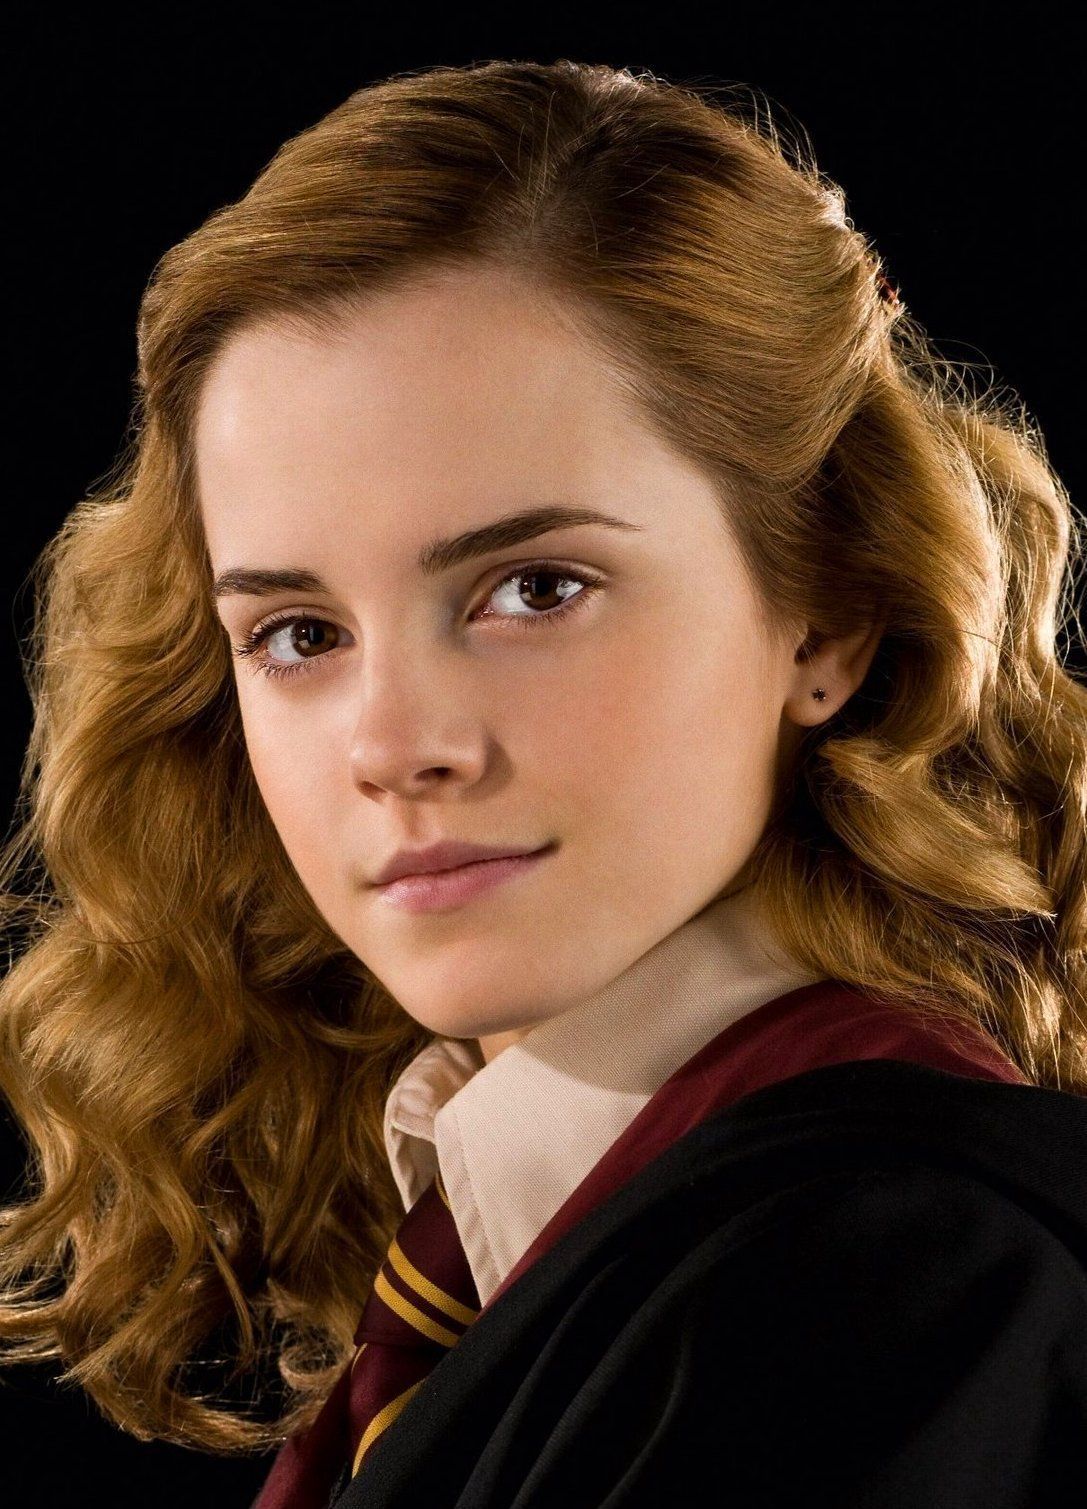 ¿En qué año nació Hermione Granger?